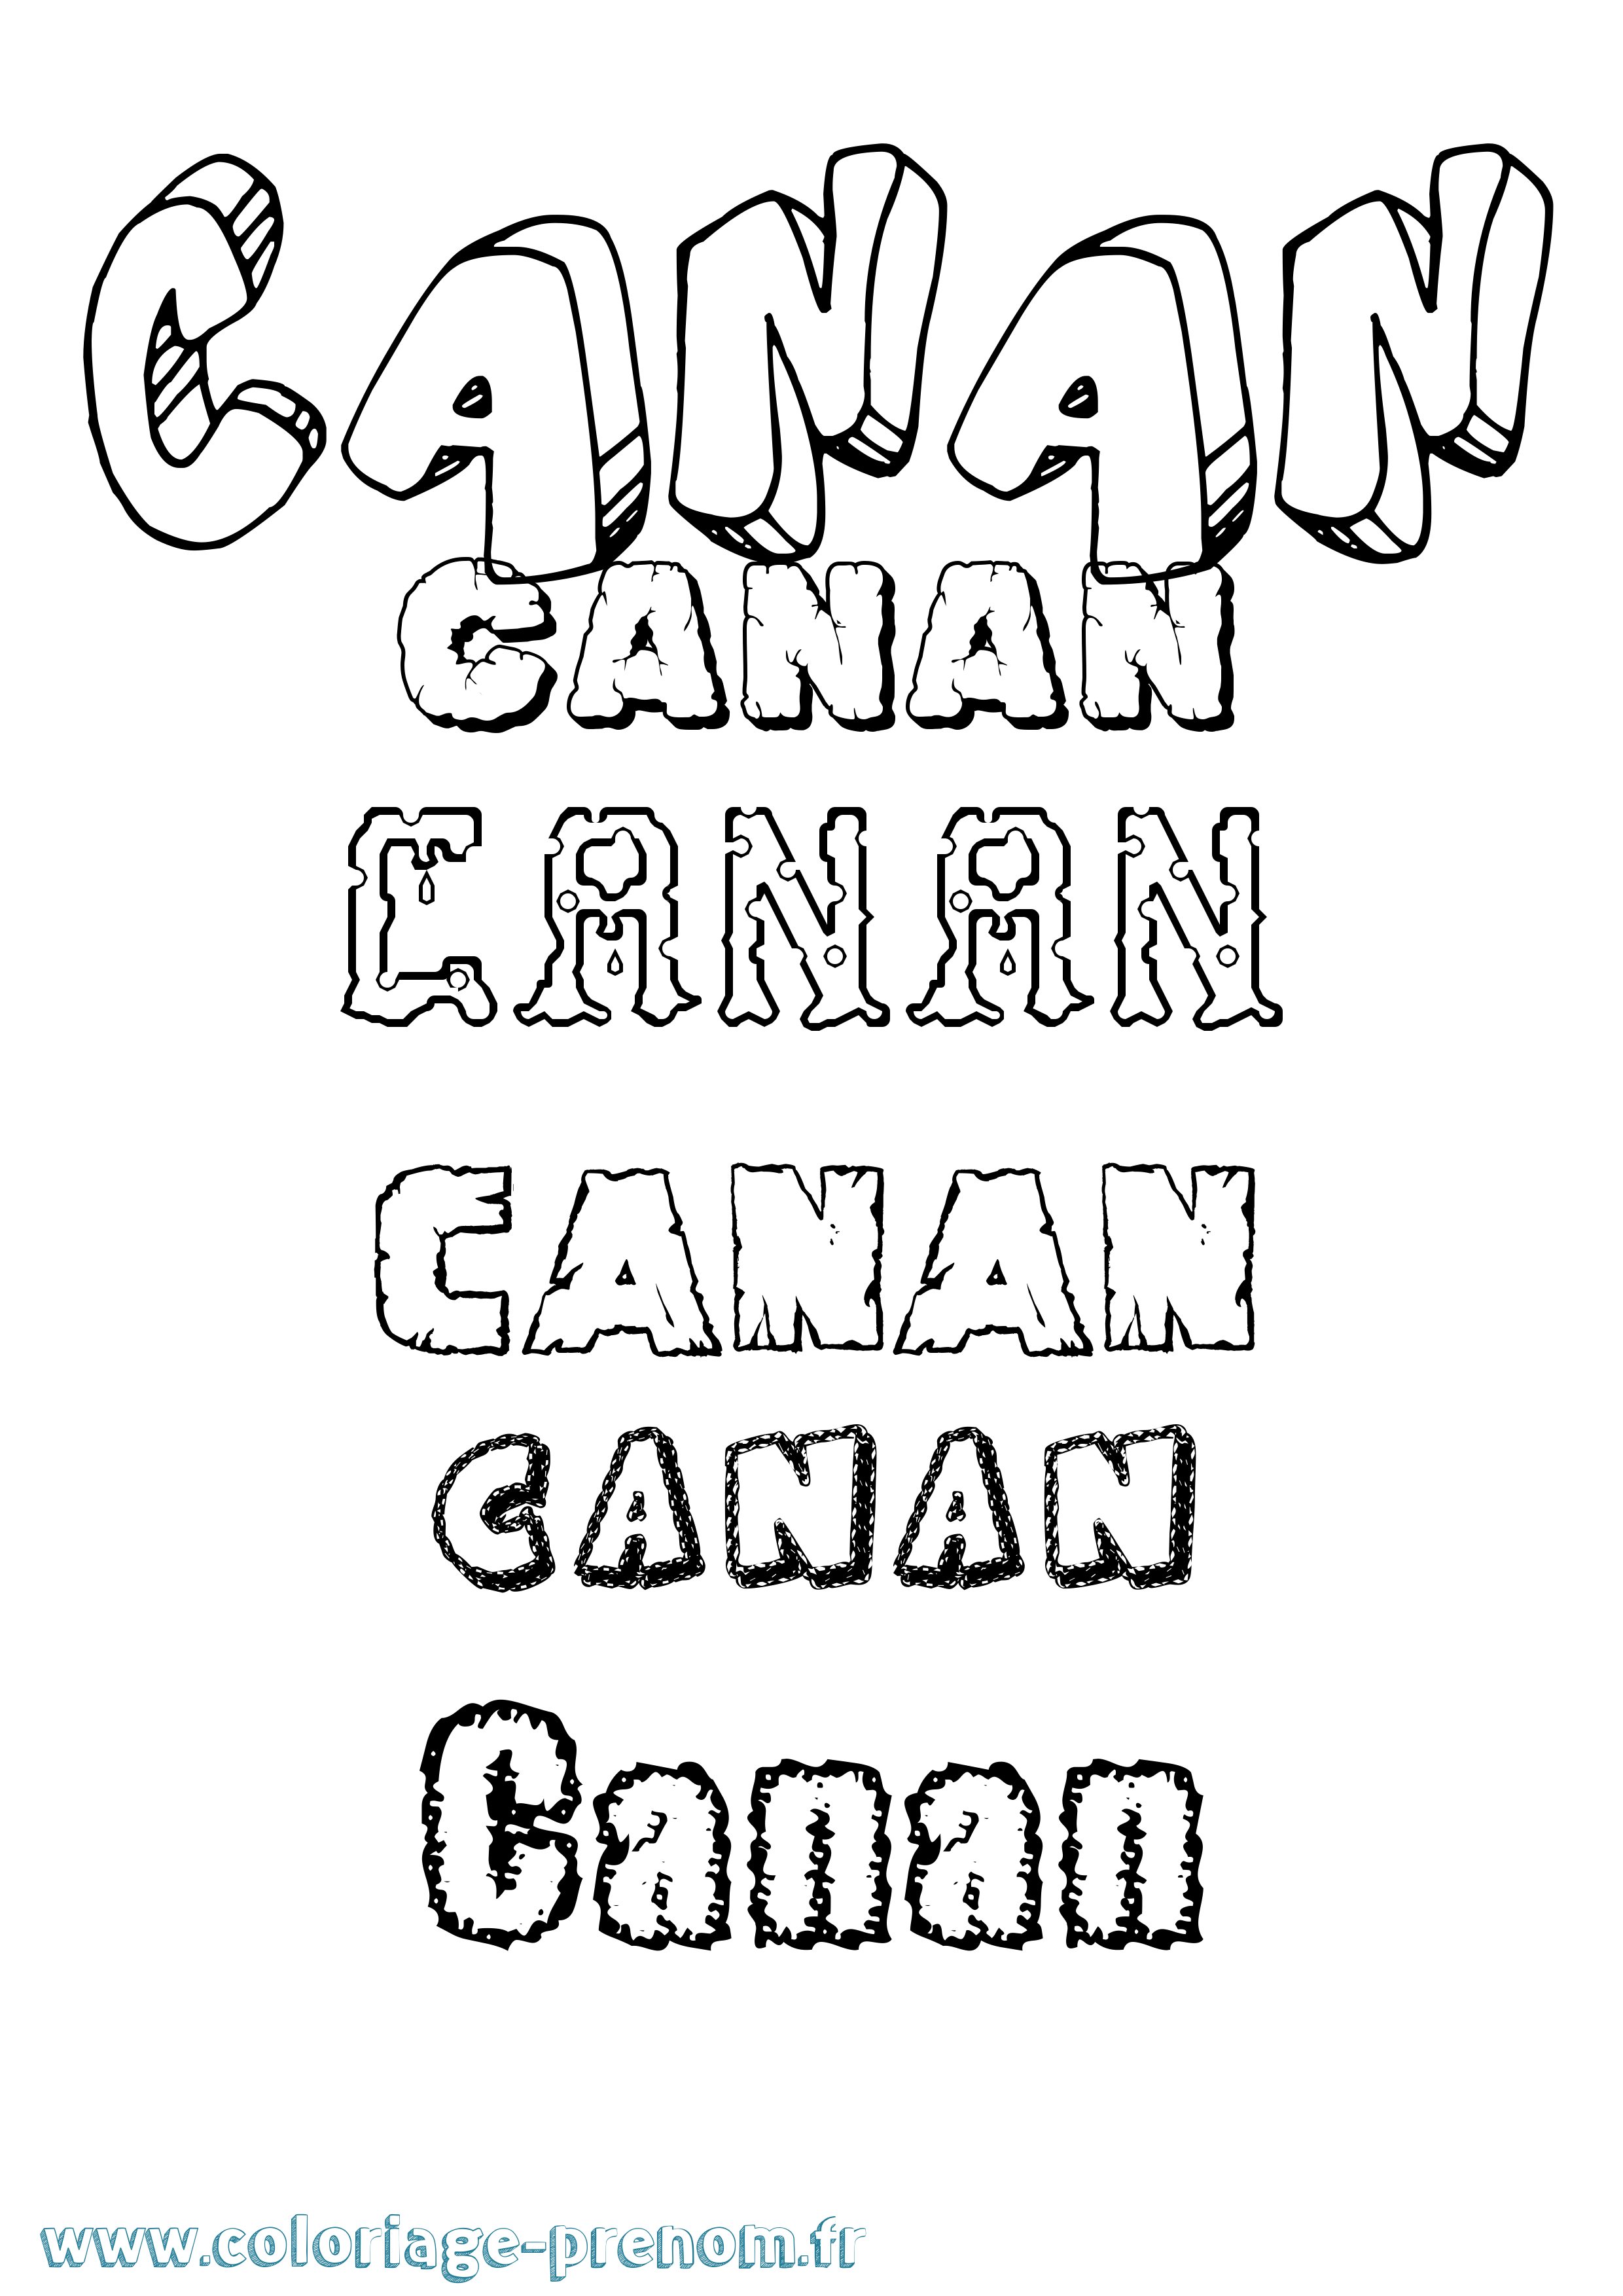 Coloriage prénom Canan Destructuré